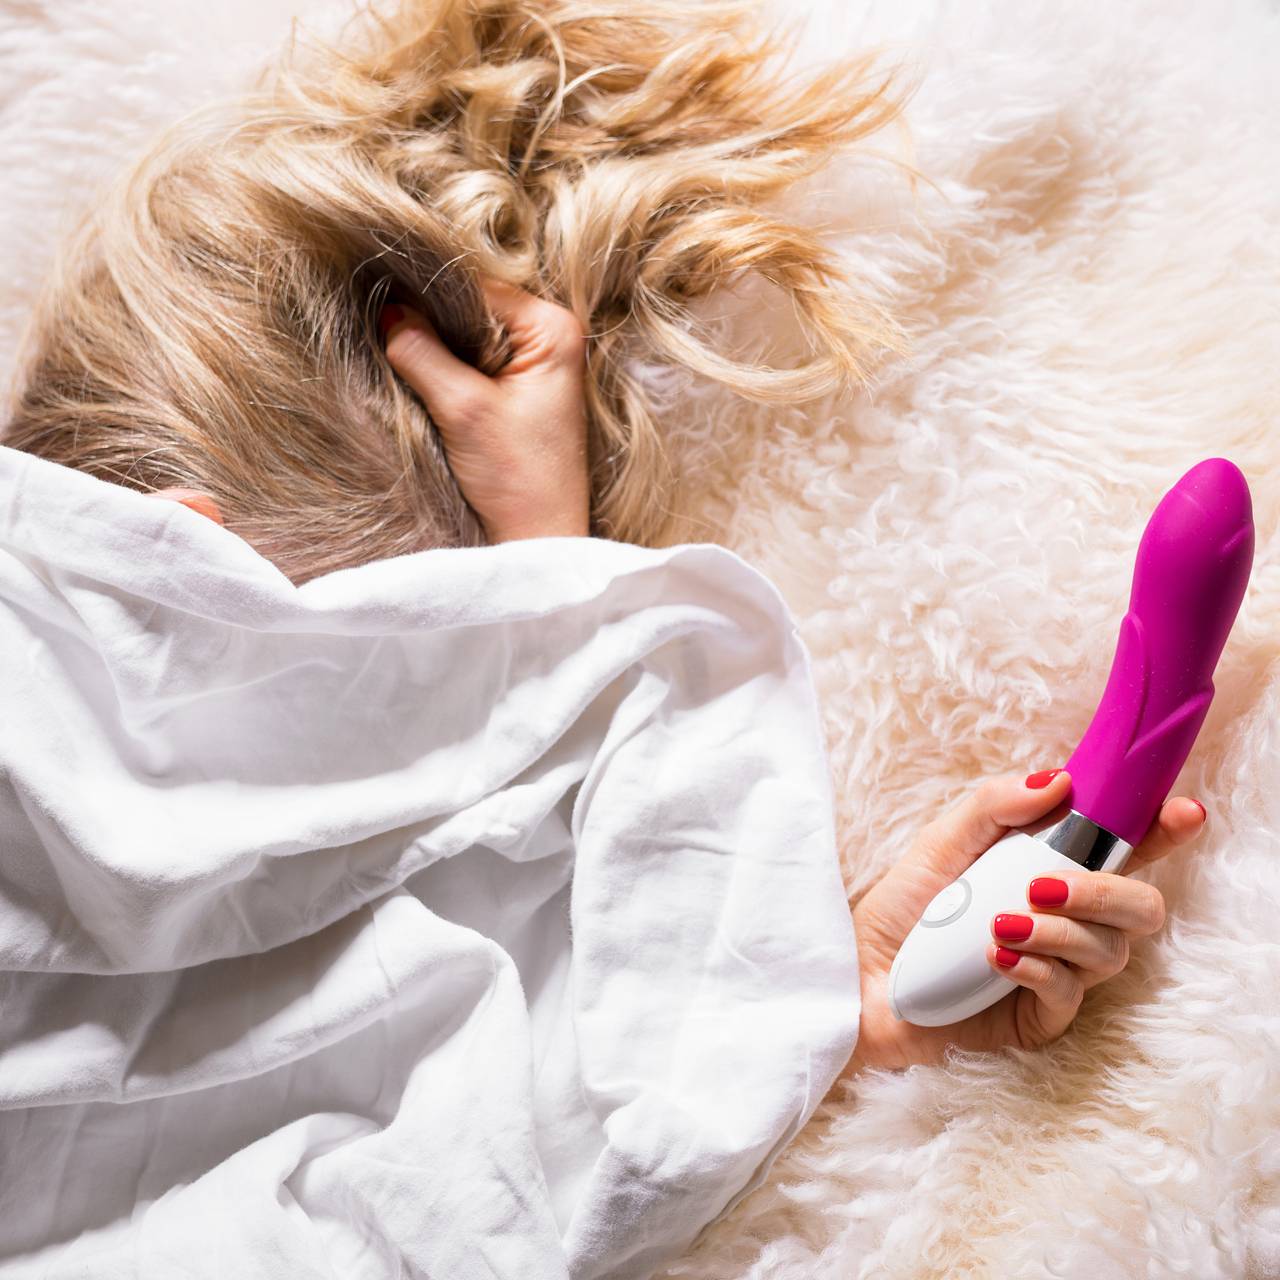 10 лучших секс-игрушек для пар — проверили на себе